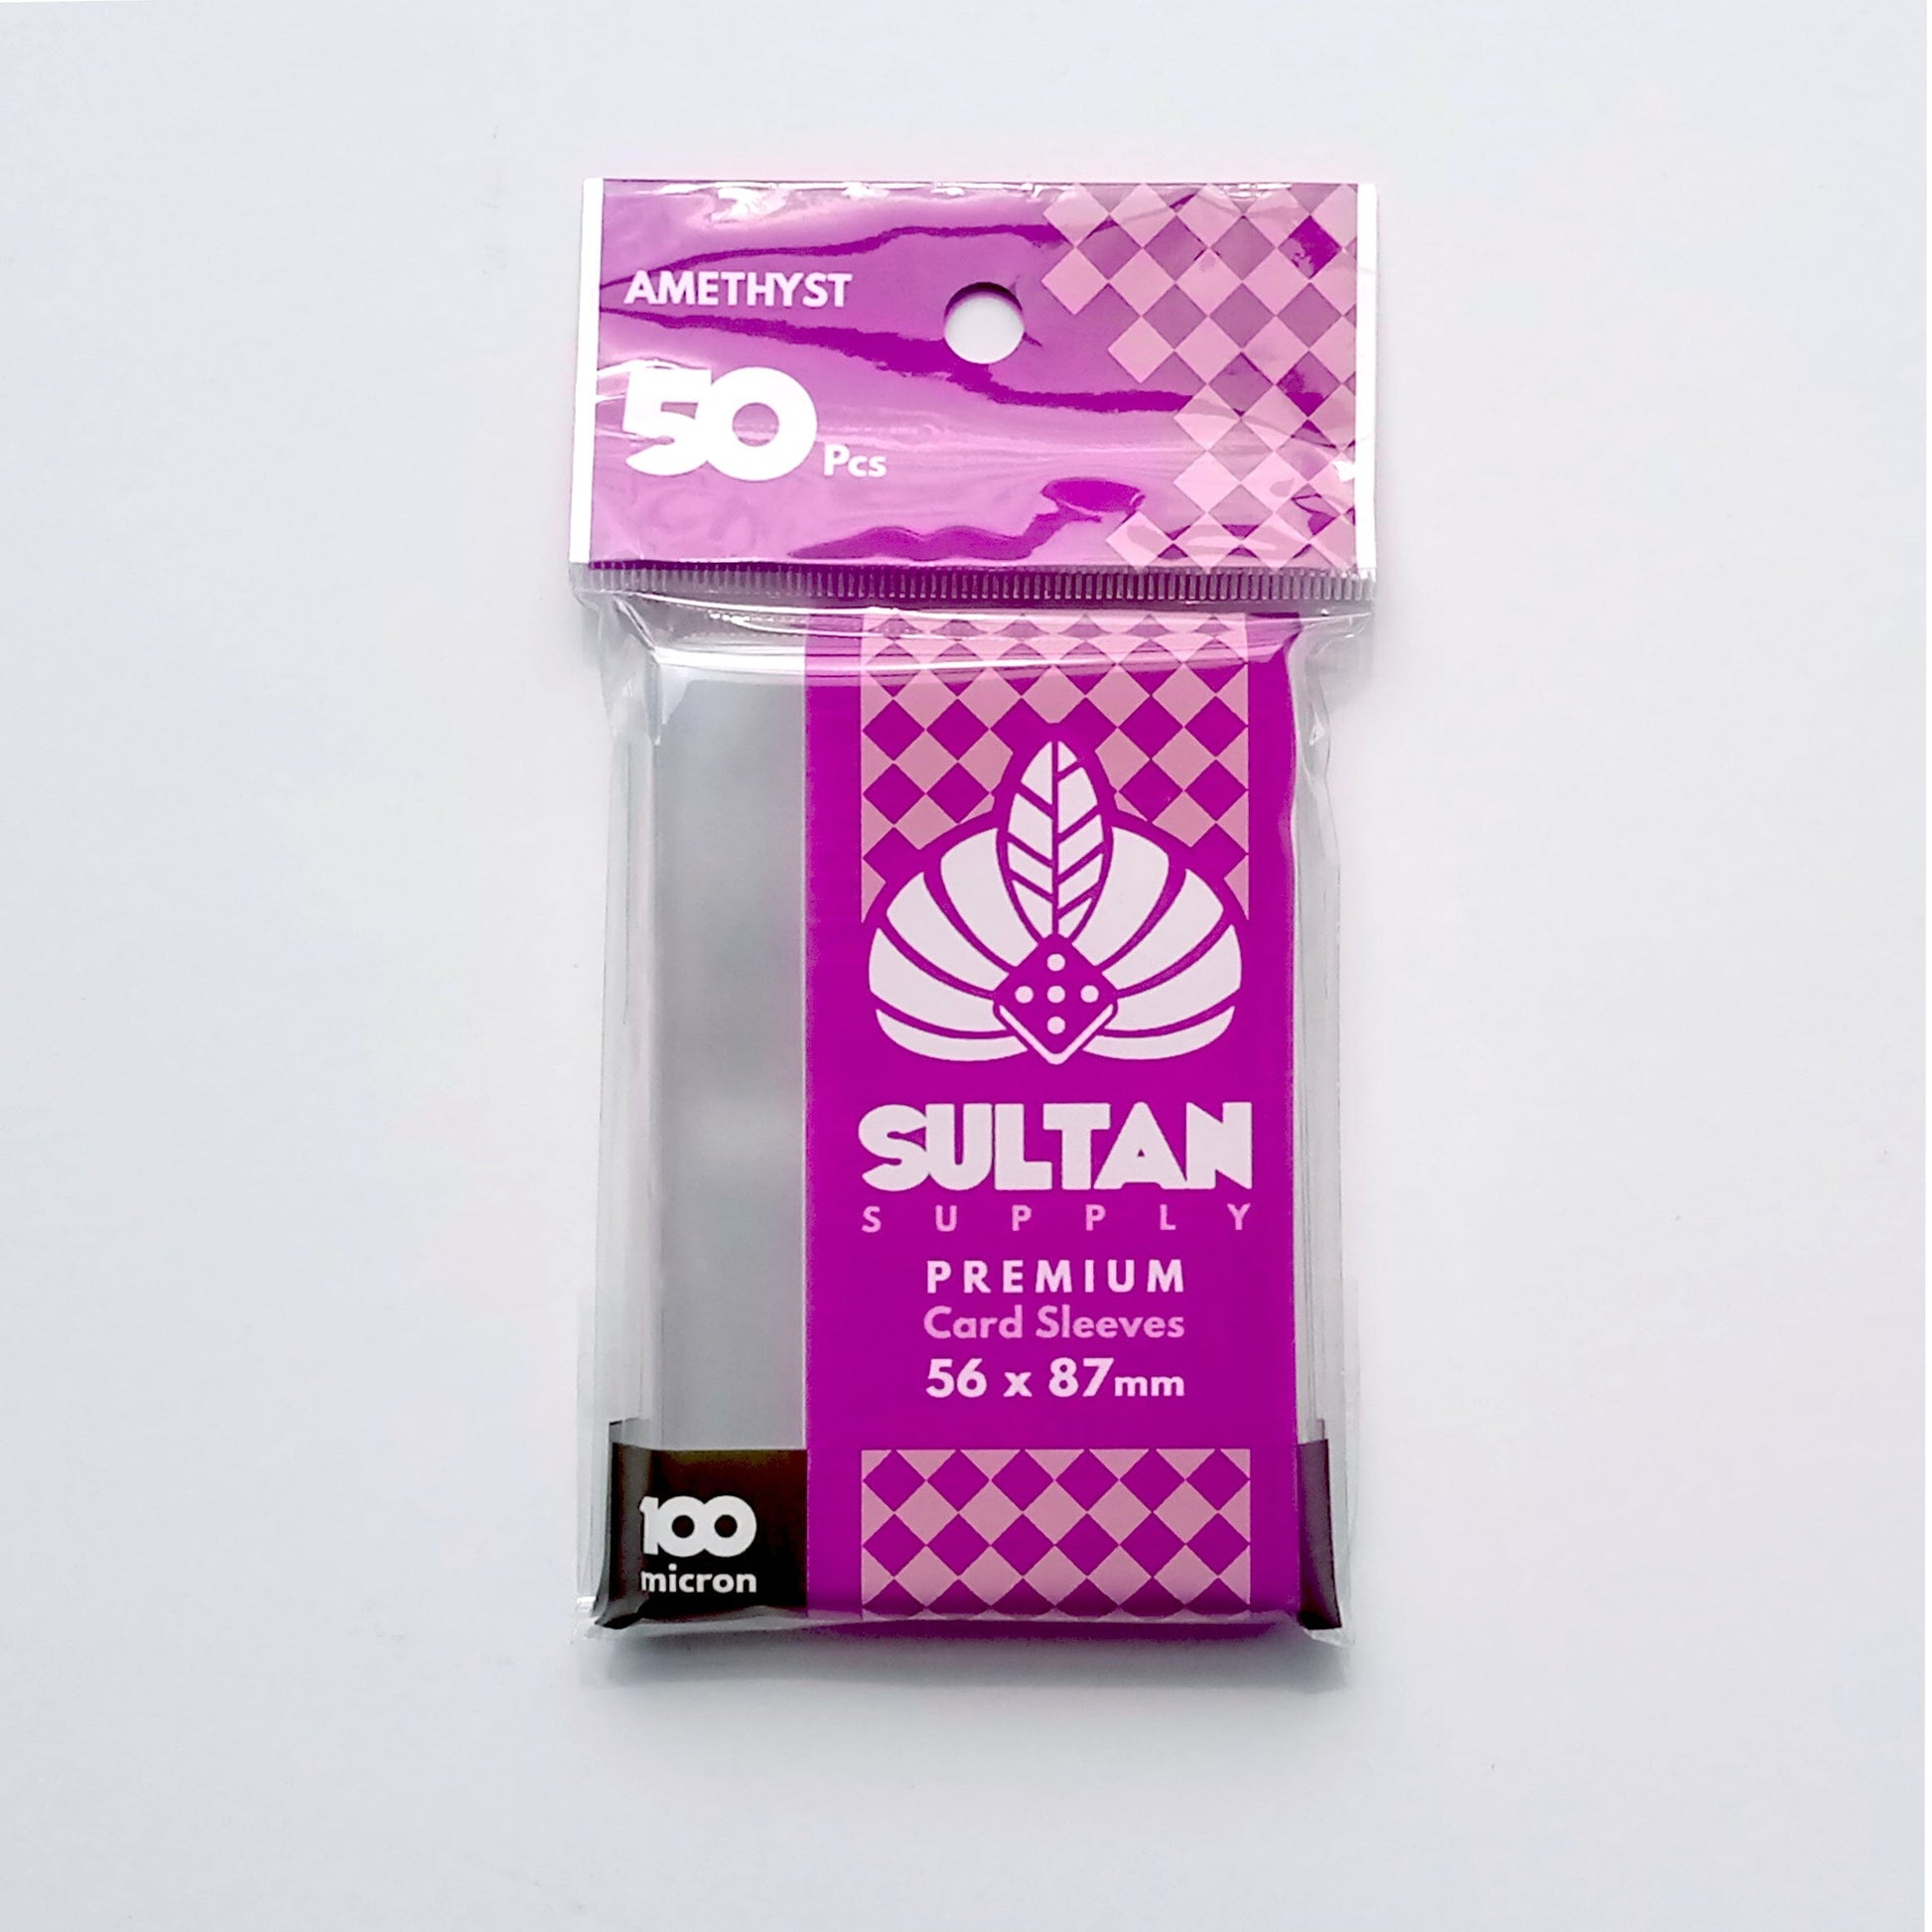 Amethyst Standard US Board Game Sleeves 56x87 (50 pcs) Card Sleeves Sultan Supply 